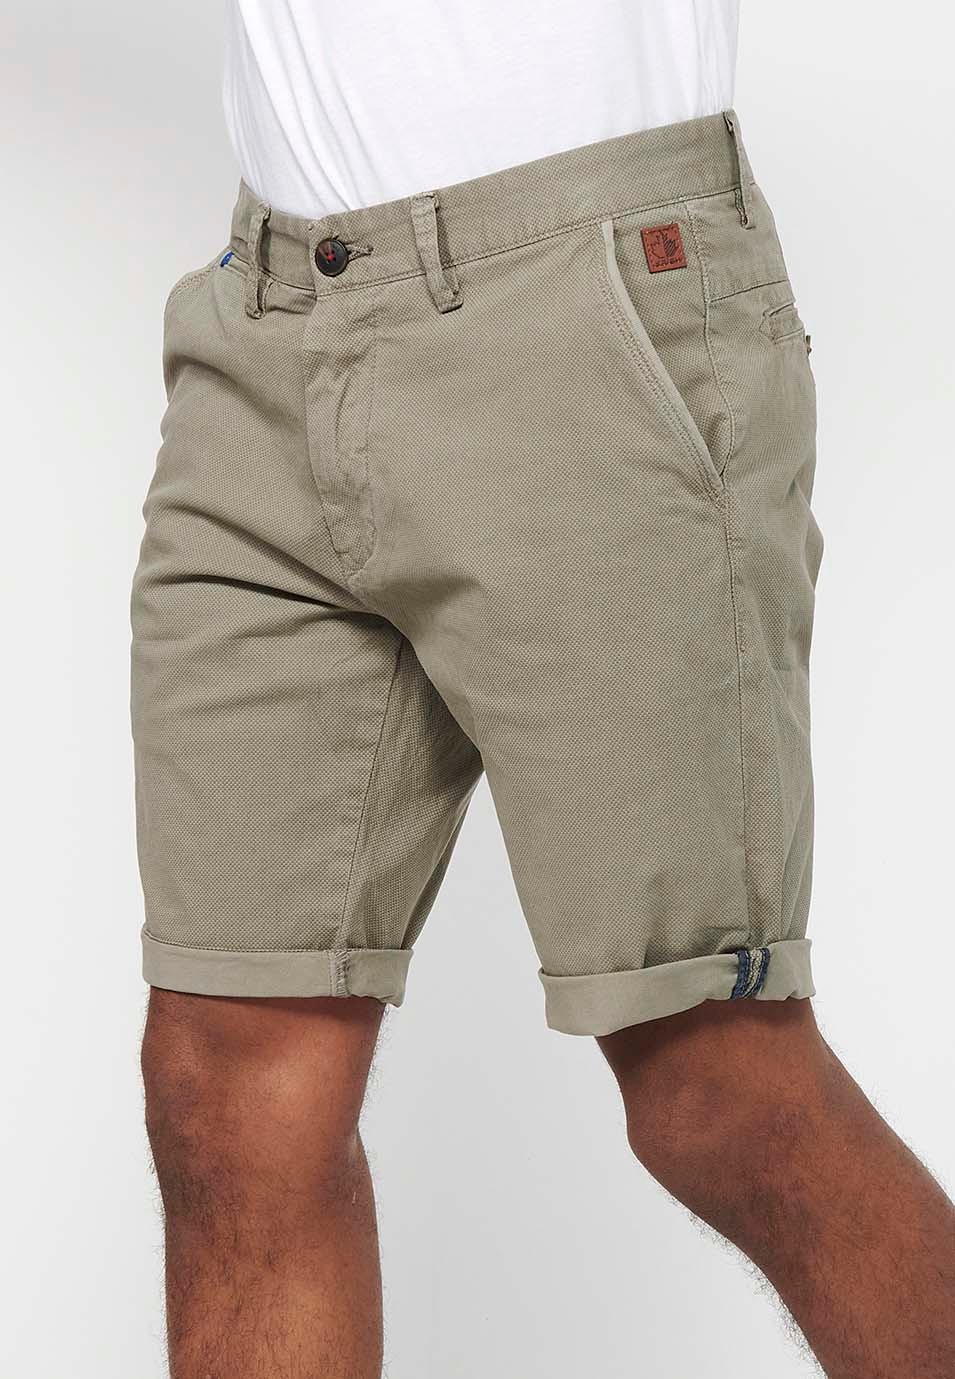 Herren-Bermuda-Chino-Shorts mit Umschlag, Reißverschluss vorne und Knopfverschluss sowie vier Taschen in Nerzfarbe 2